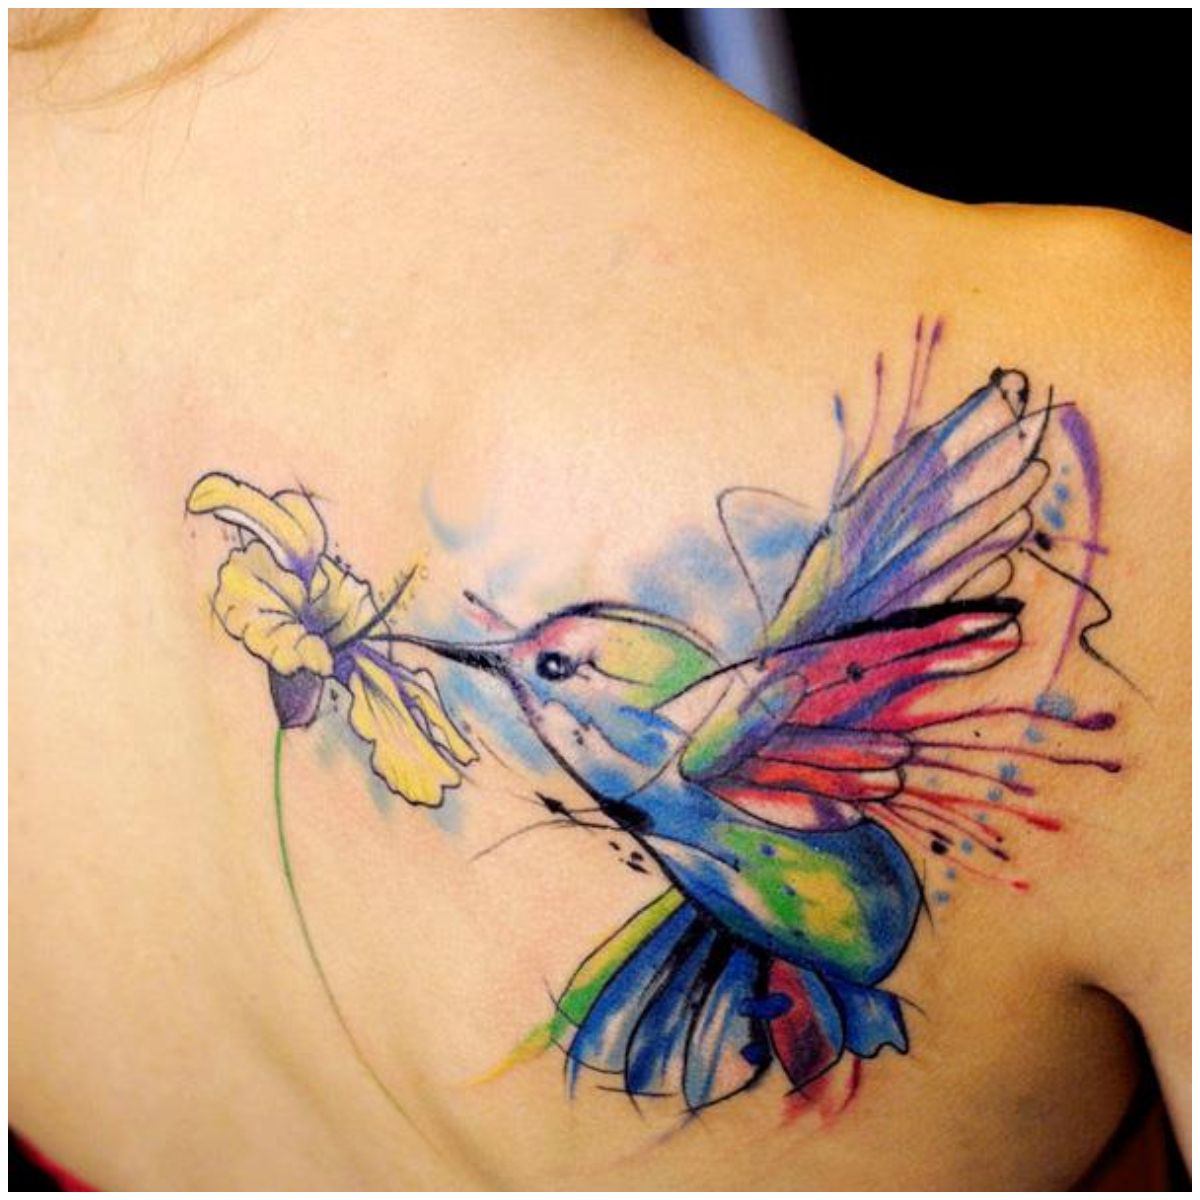 Hummingbird Tattoo Simple Hummingbird Tattoos Bird Tattoo Tattoo Flash  Digital Download Small Hummingbird Tattoo With Flowers - Etsy Norway